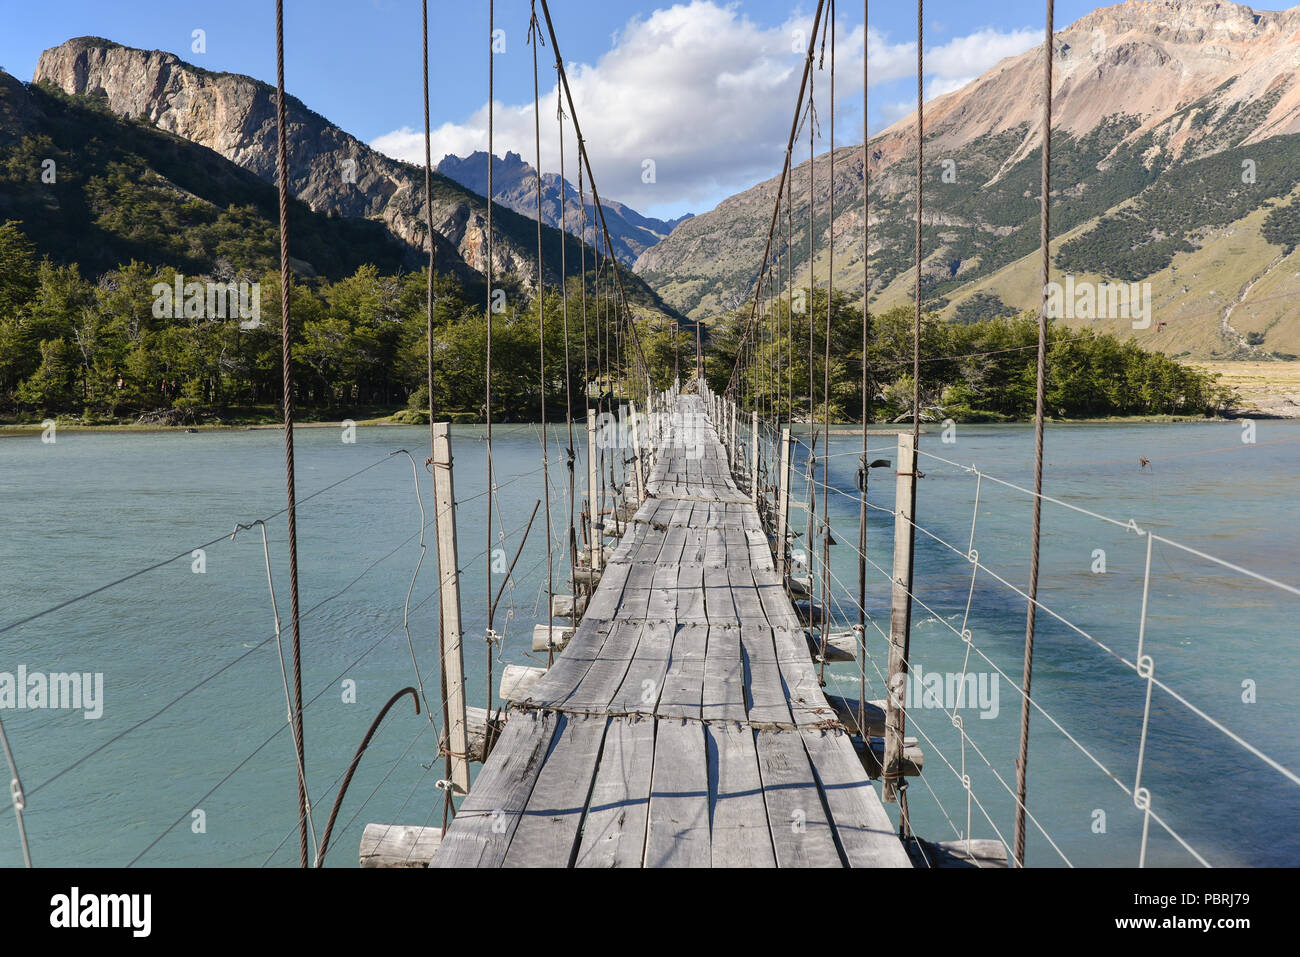 Suspension bridge at Cerro Fitz Roy, Los Glaciares National Park, El Chaltén, Santa Cruz Province, Patagonia, Argentina Stock Photo